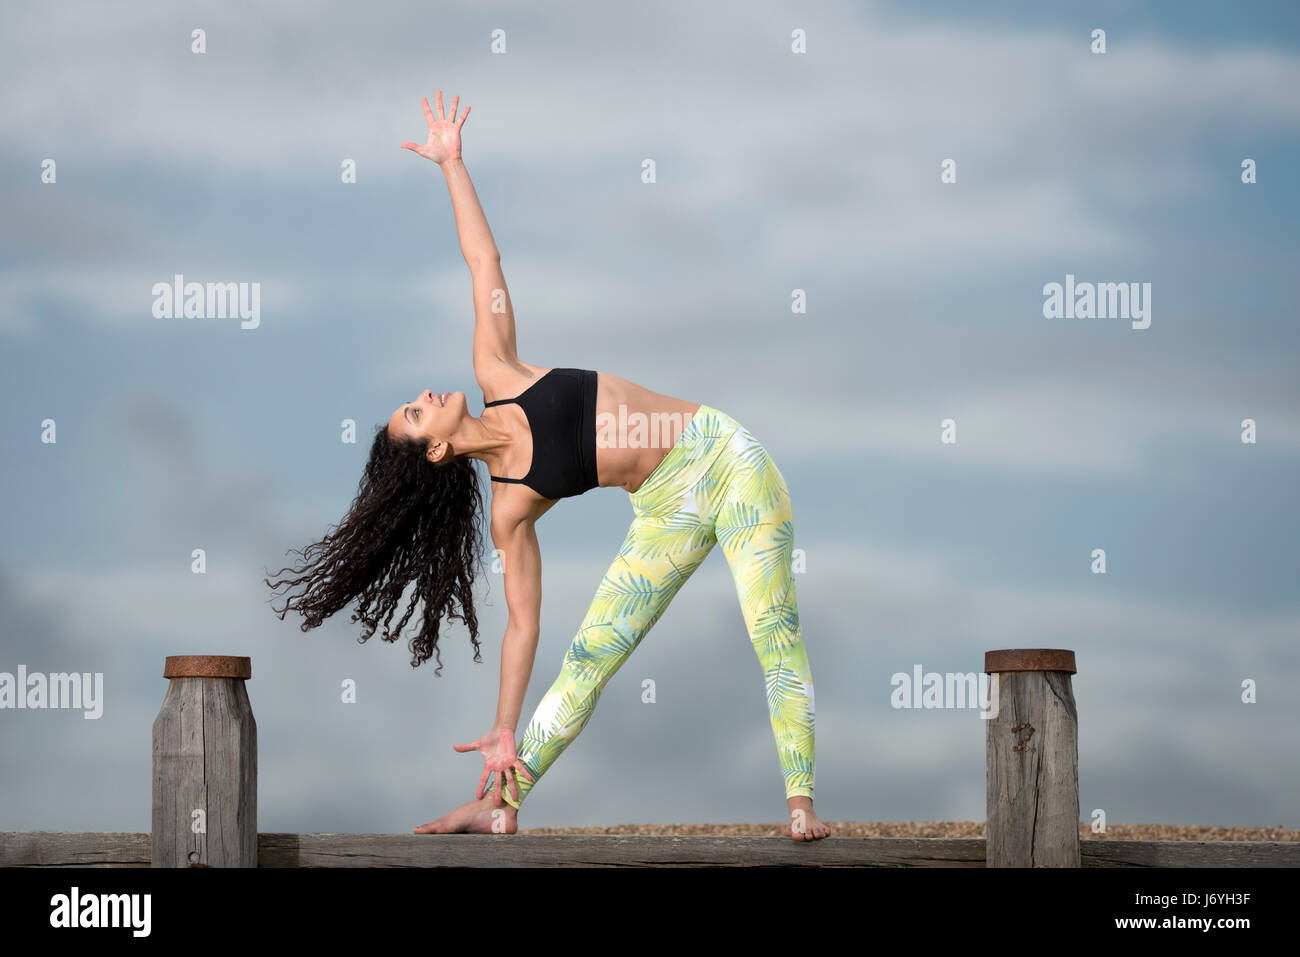 Woman practicing yoga à l'extérieur Banque D'Images